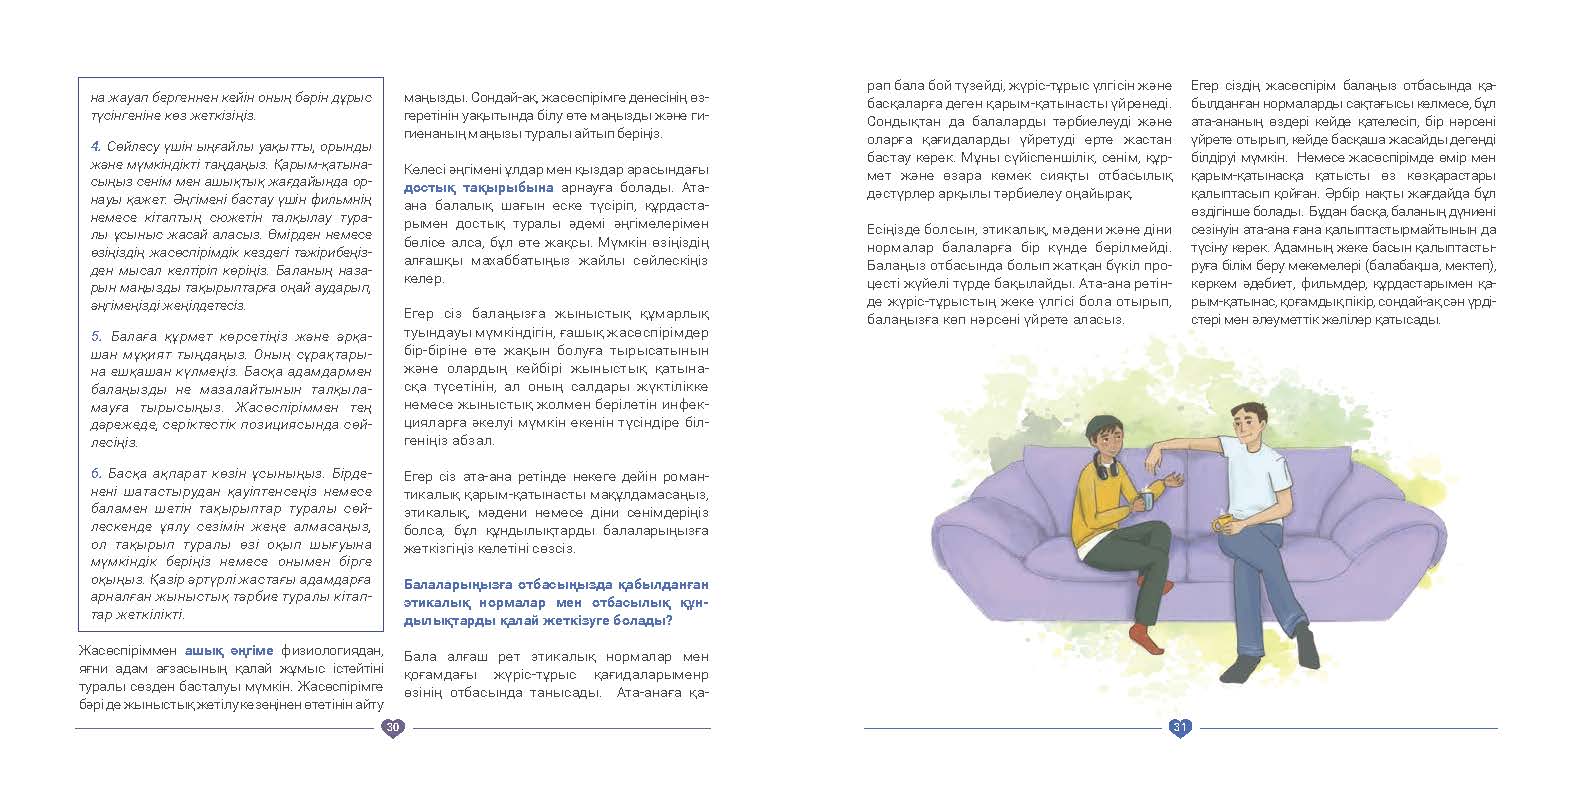 EVAC brochure KAZ (16).jpg